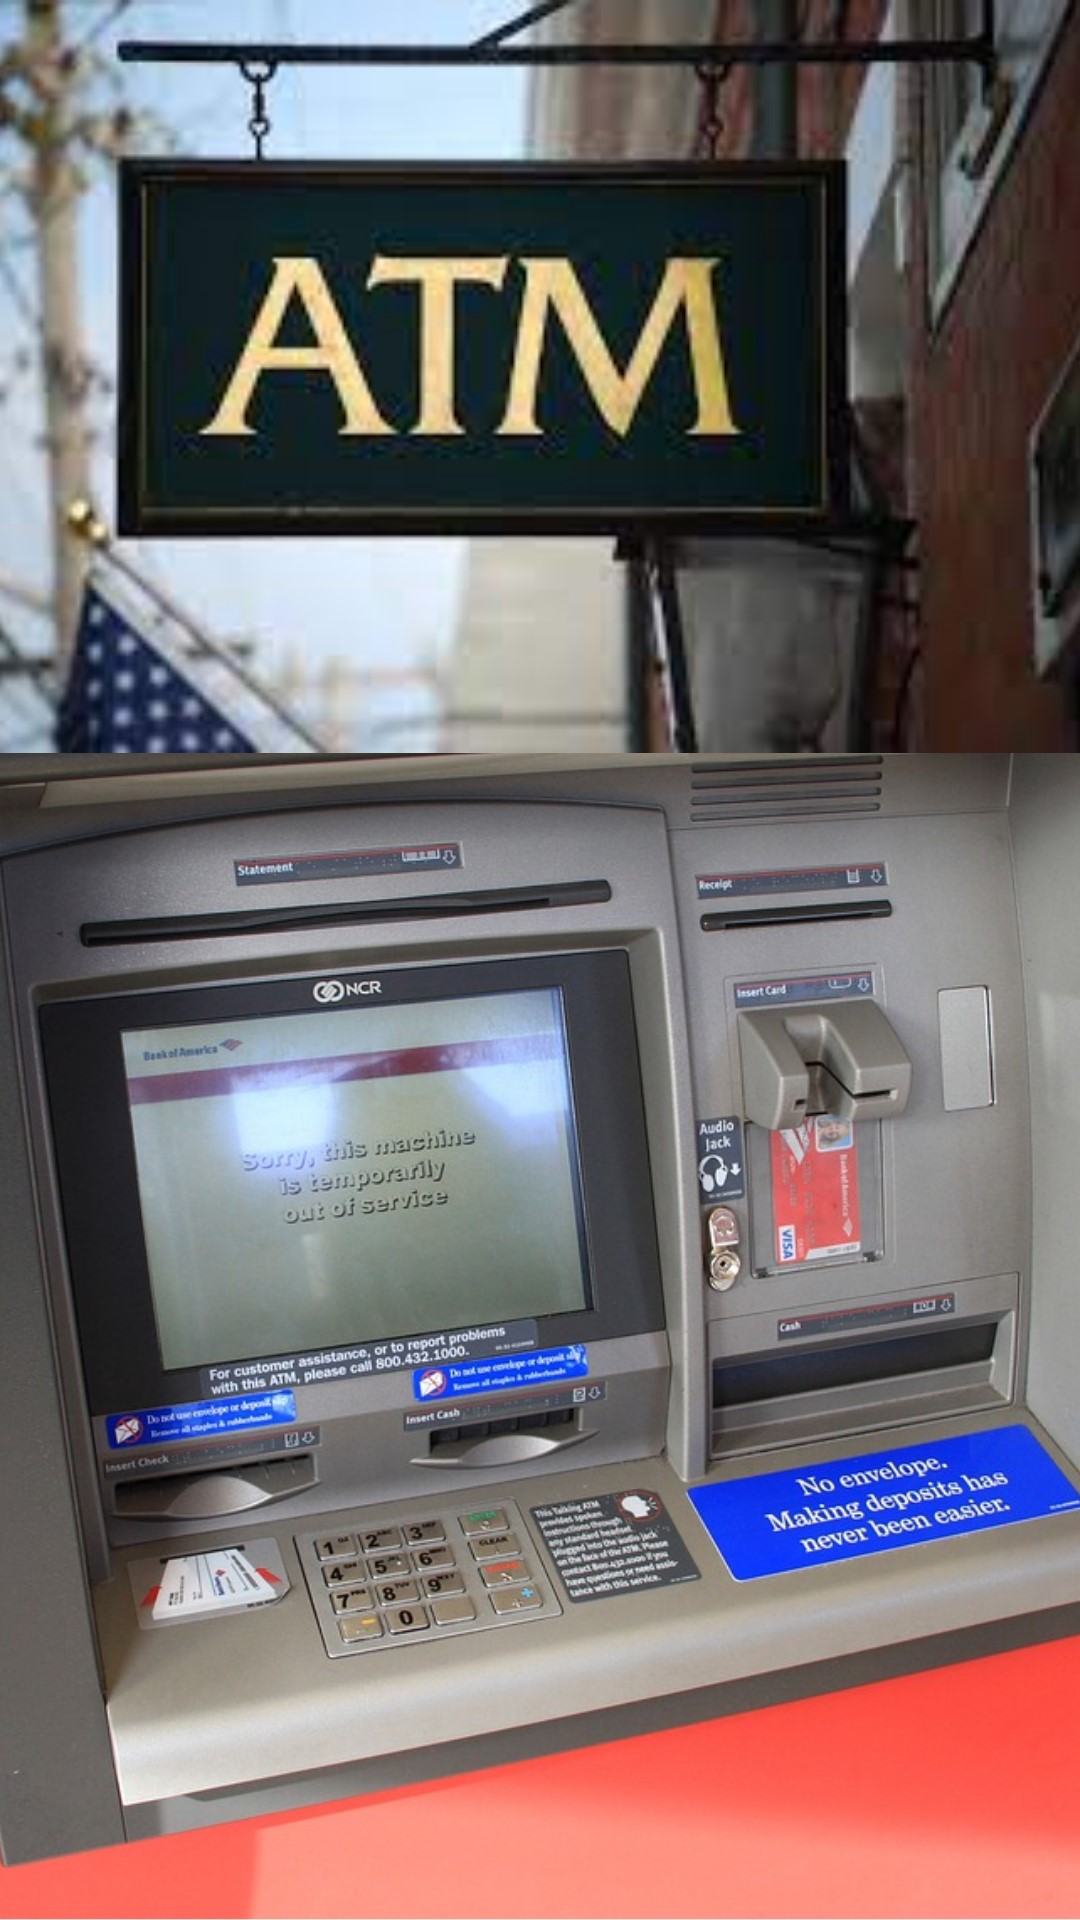 ATM ने दुनिया में पहली बार कब और कहां दी दस्तक? किस बैंक ने सबसे पहले किया पेश?